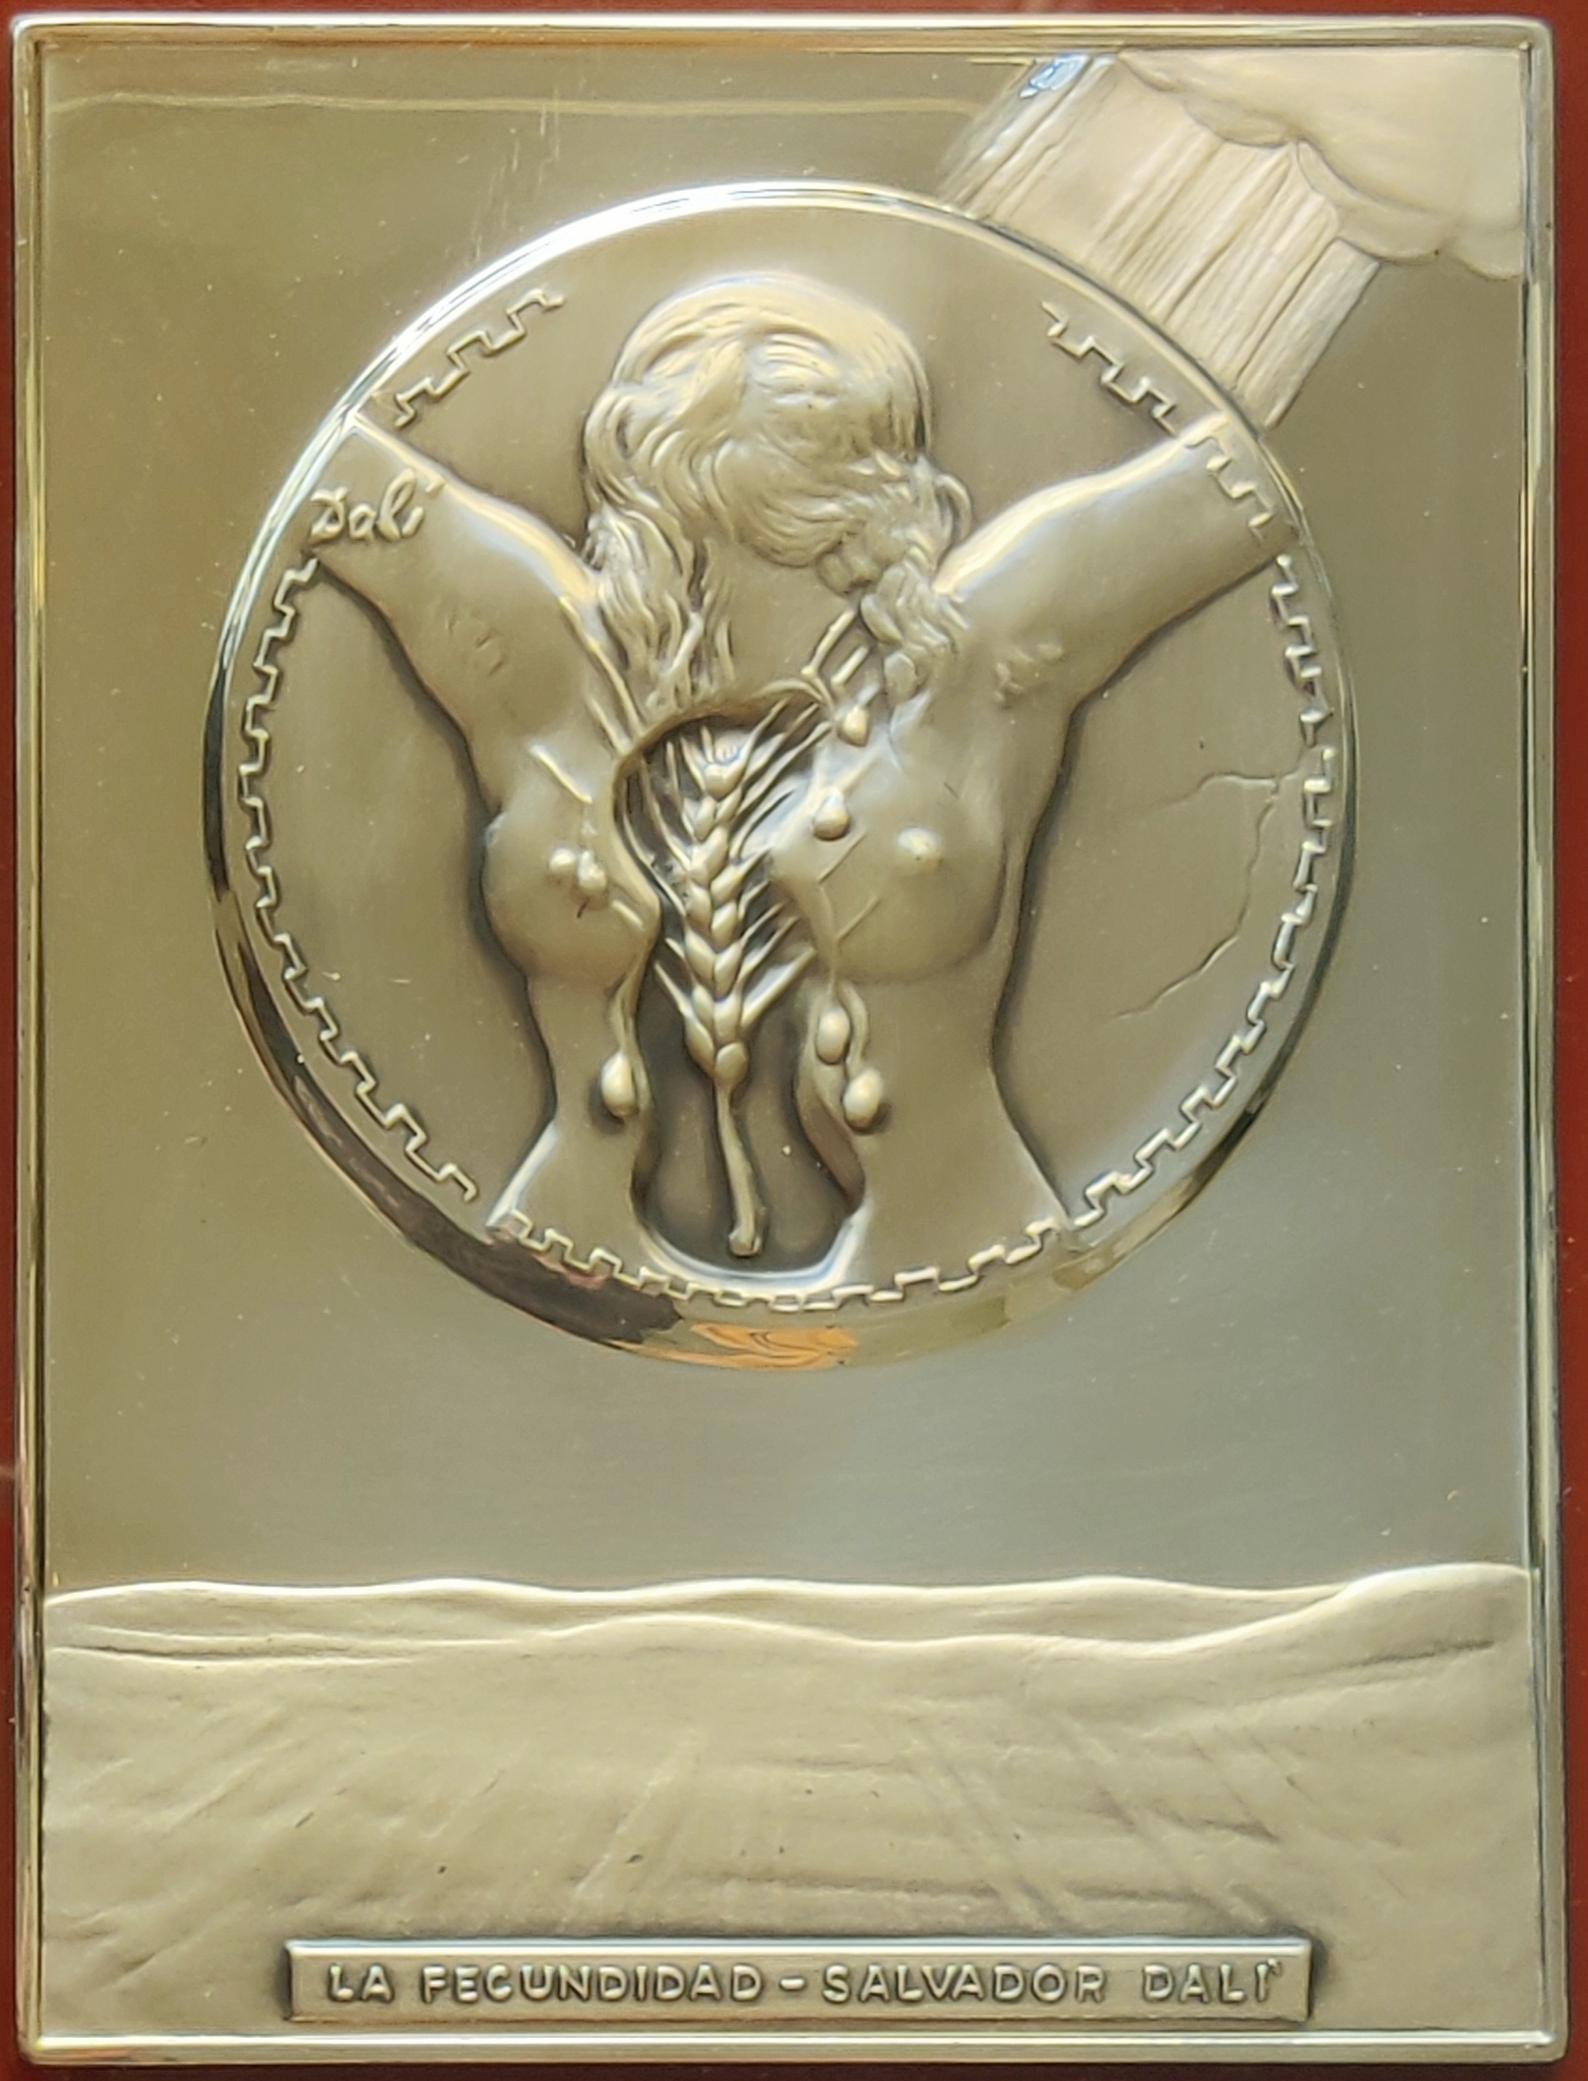 Salvador Dali 
Fruchtbarkeit - Basrelief-Silber-Skulptur, 1977
Abmessungen: 24 x 18 cm
Gerahmt: 38 x 33 cm
Unterzeichnet auf dem Flachrelief und gedruckte Unterschrift auf dem Zertifikat auf der Rückseite.
Nummer der Ausgabe: I/564
Diese Plakette in